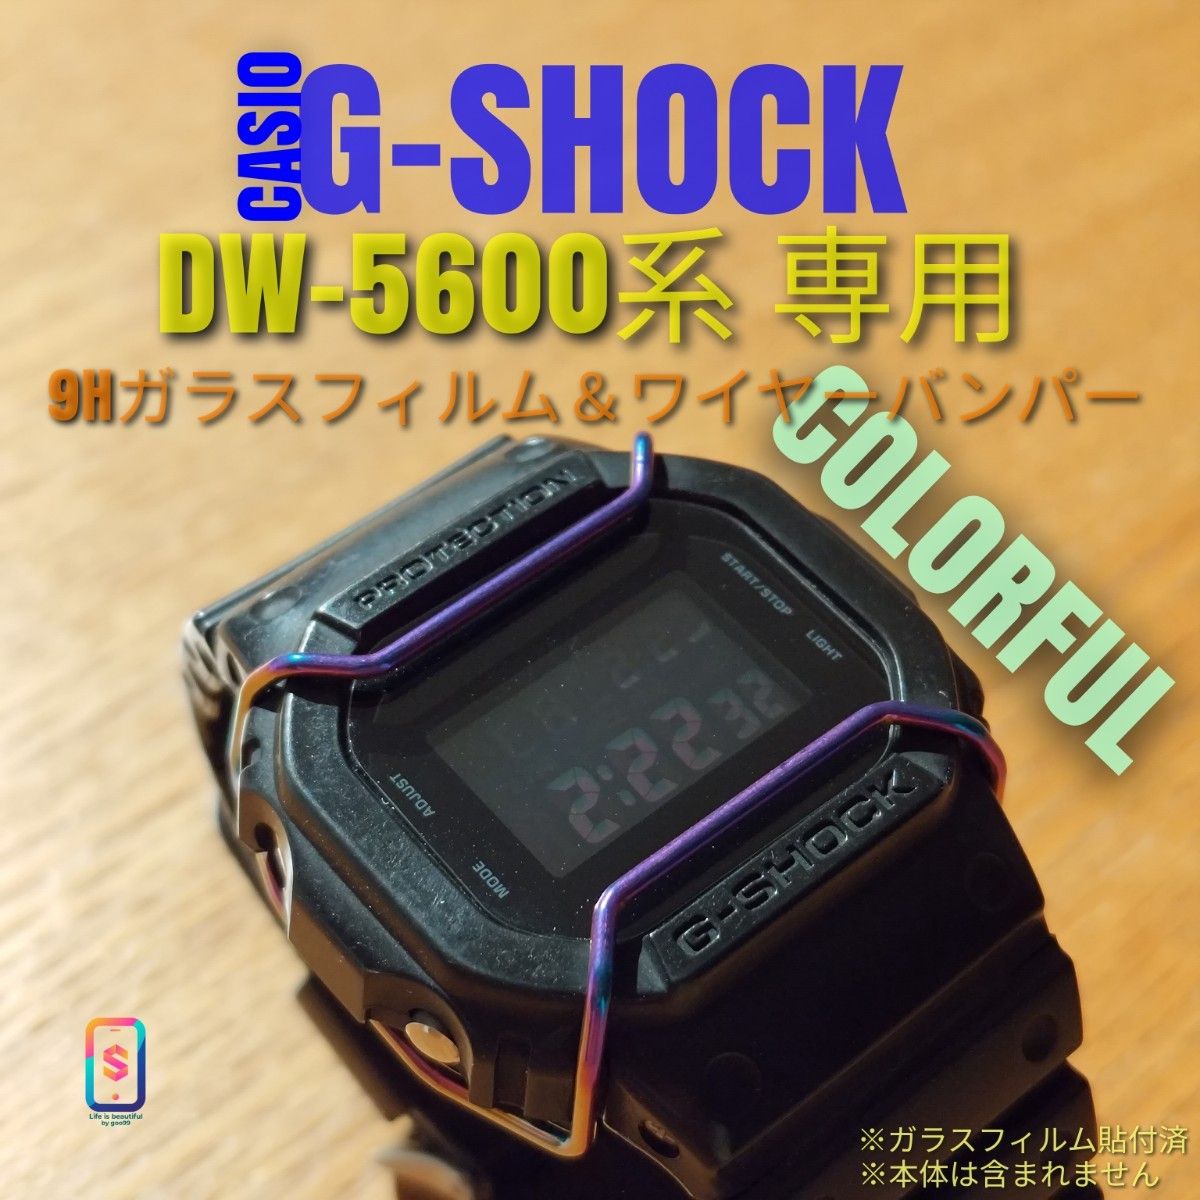 CASIO G-SHOCK  DW-5600 系専用【専用9Hガラスフィルム ＆ ステンレスワイヤーバンパーカラフル】い